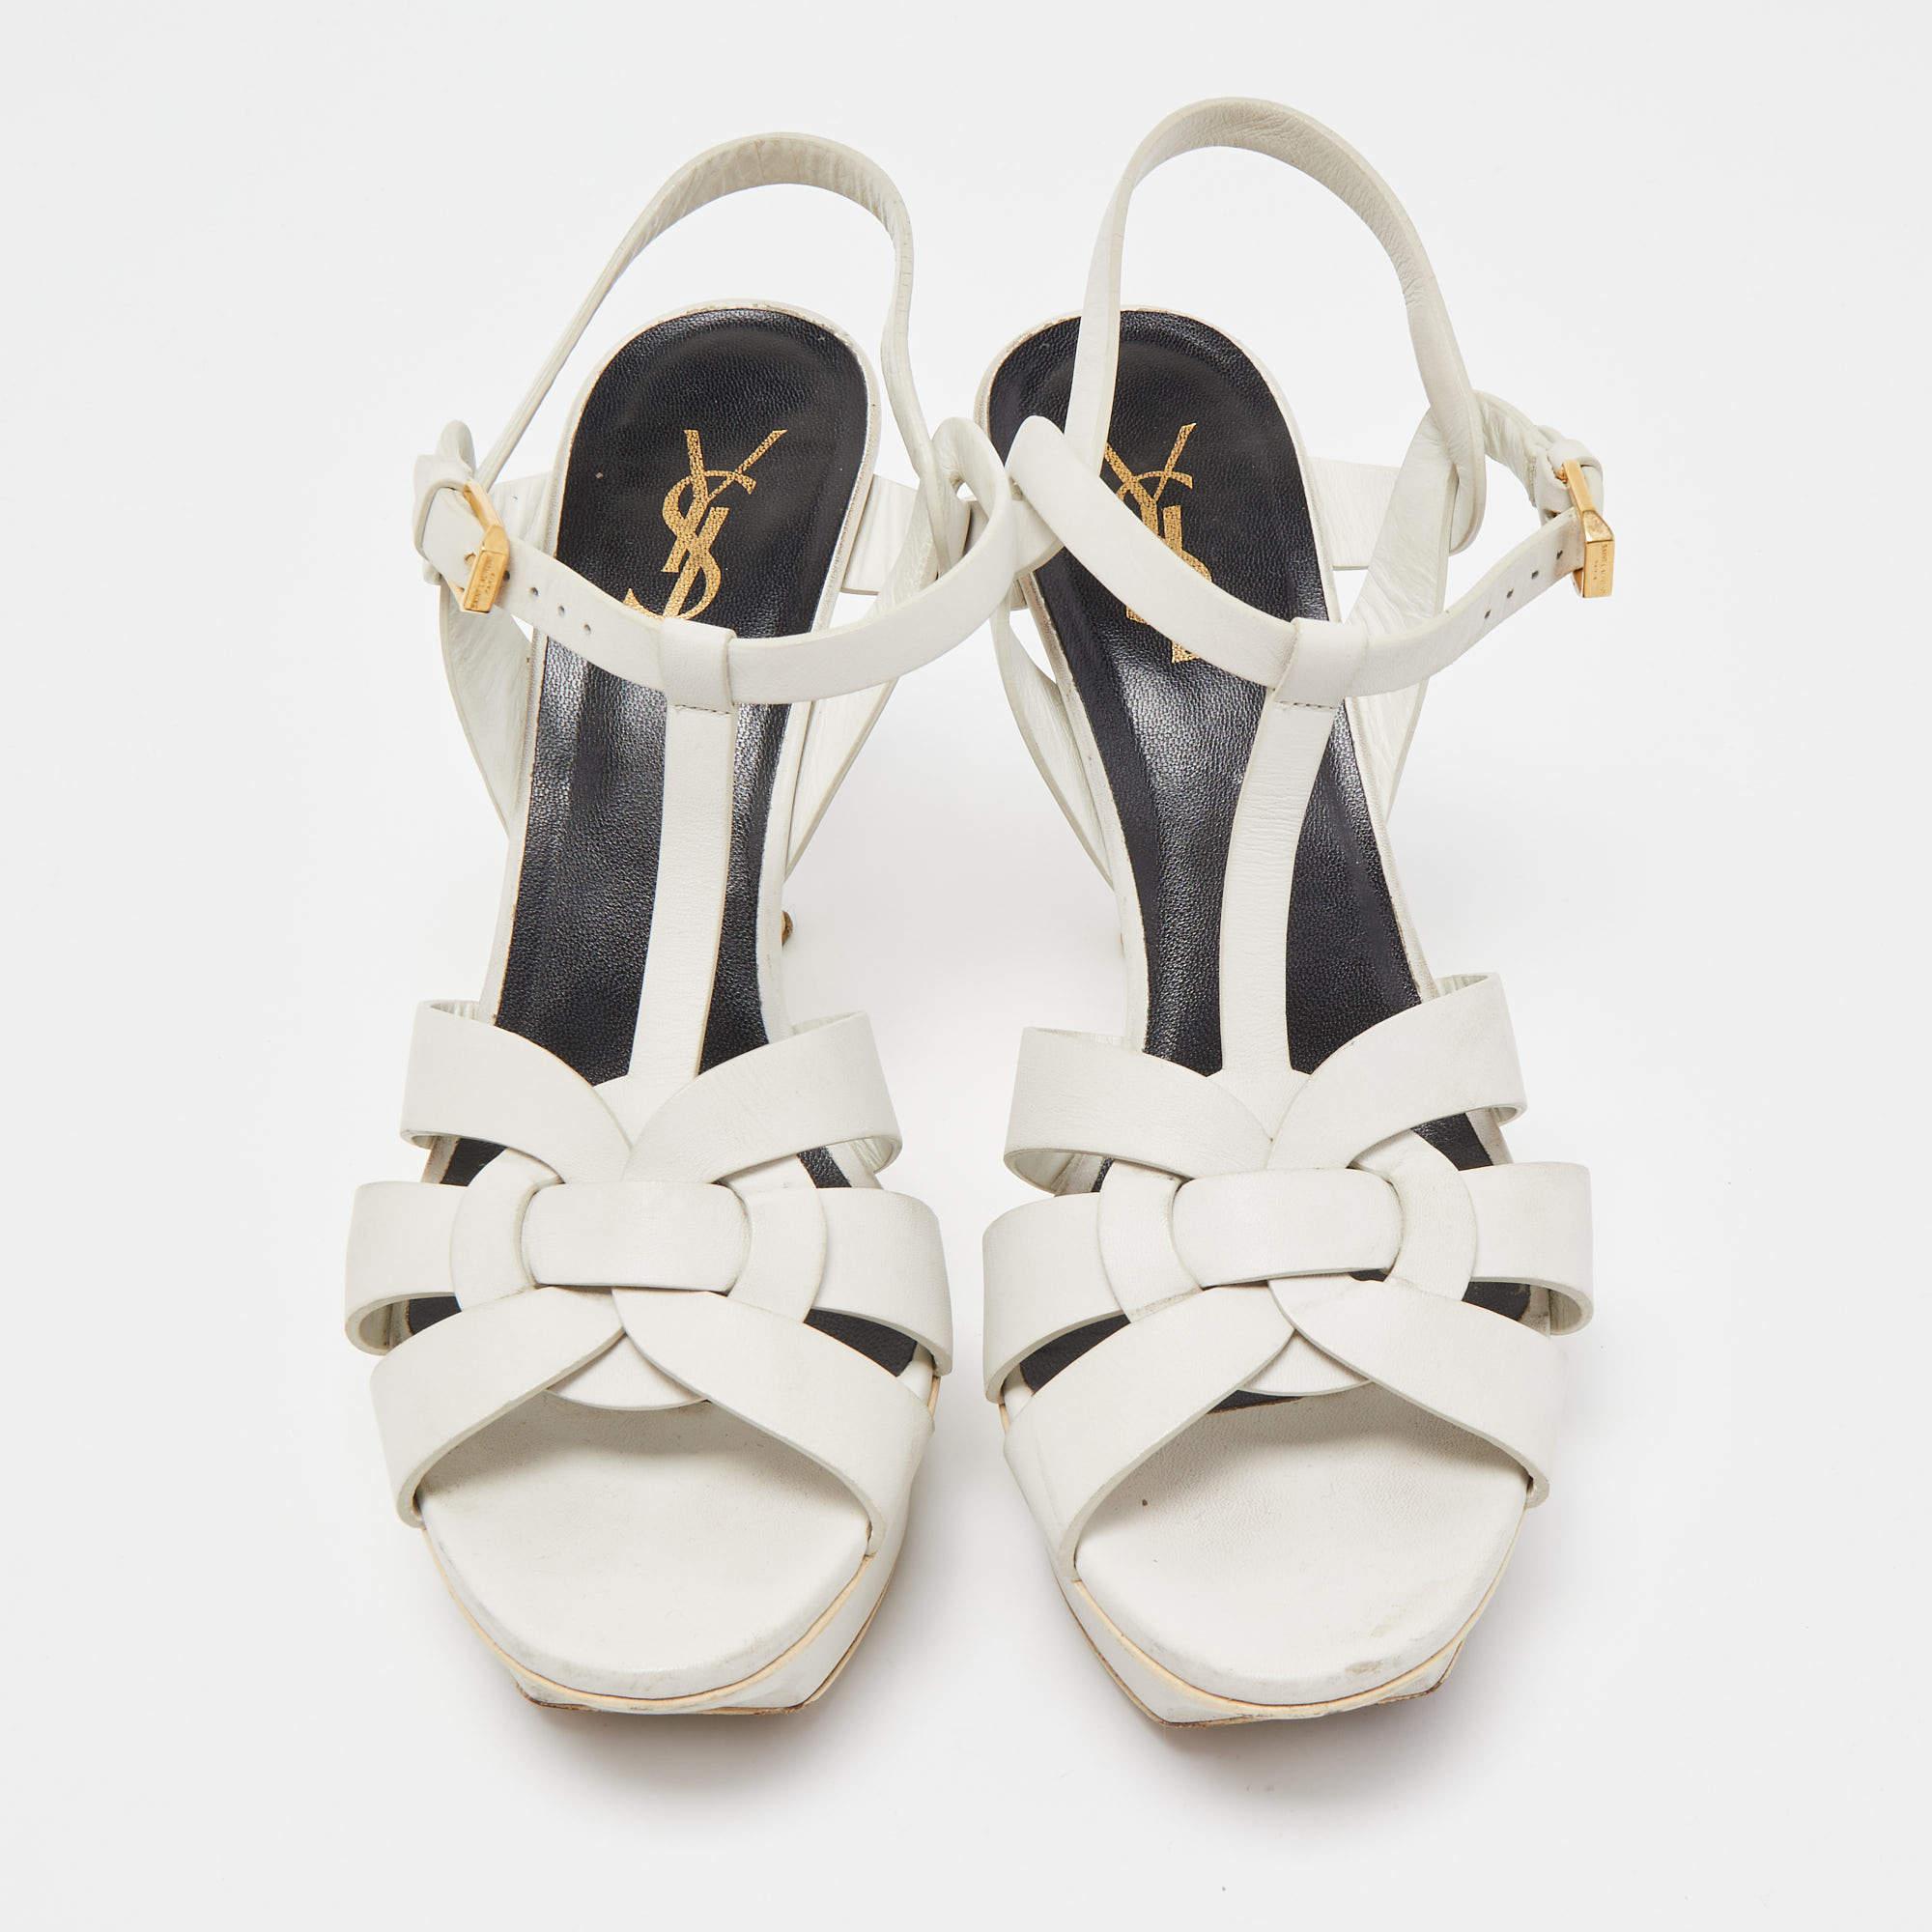 La fashionista en vous tombera instantanément amoureuse de ces sandales Saint Laurent Tribute ! Elles sont réalisées en cuir blanc et dotées de brides entrelacées sur les empeignes et d'une fermeture à boucle au niveau de la cheville. Les ferrures